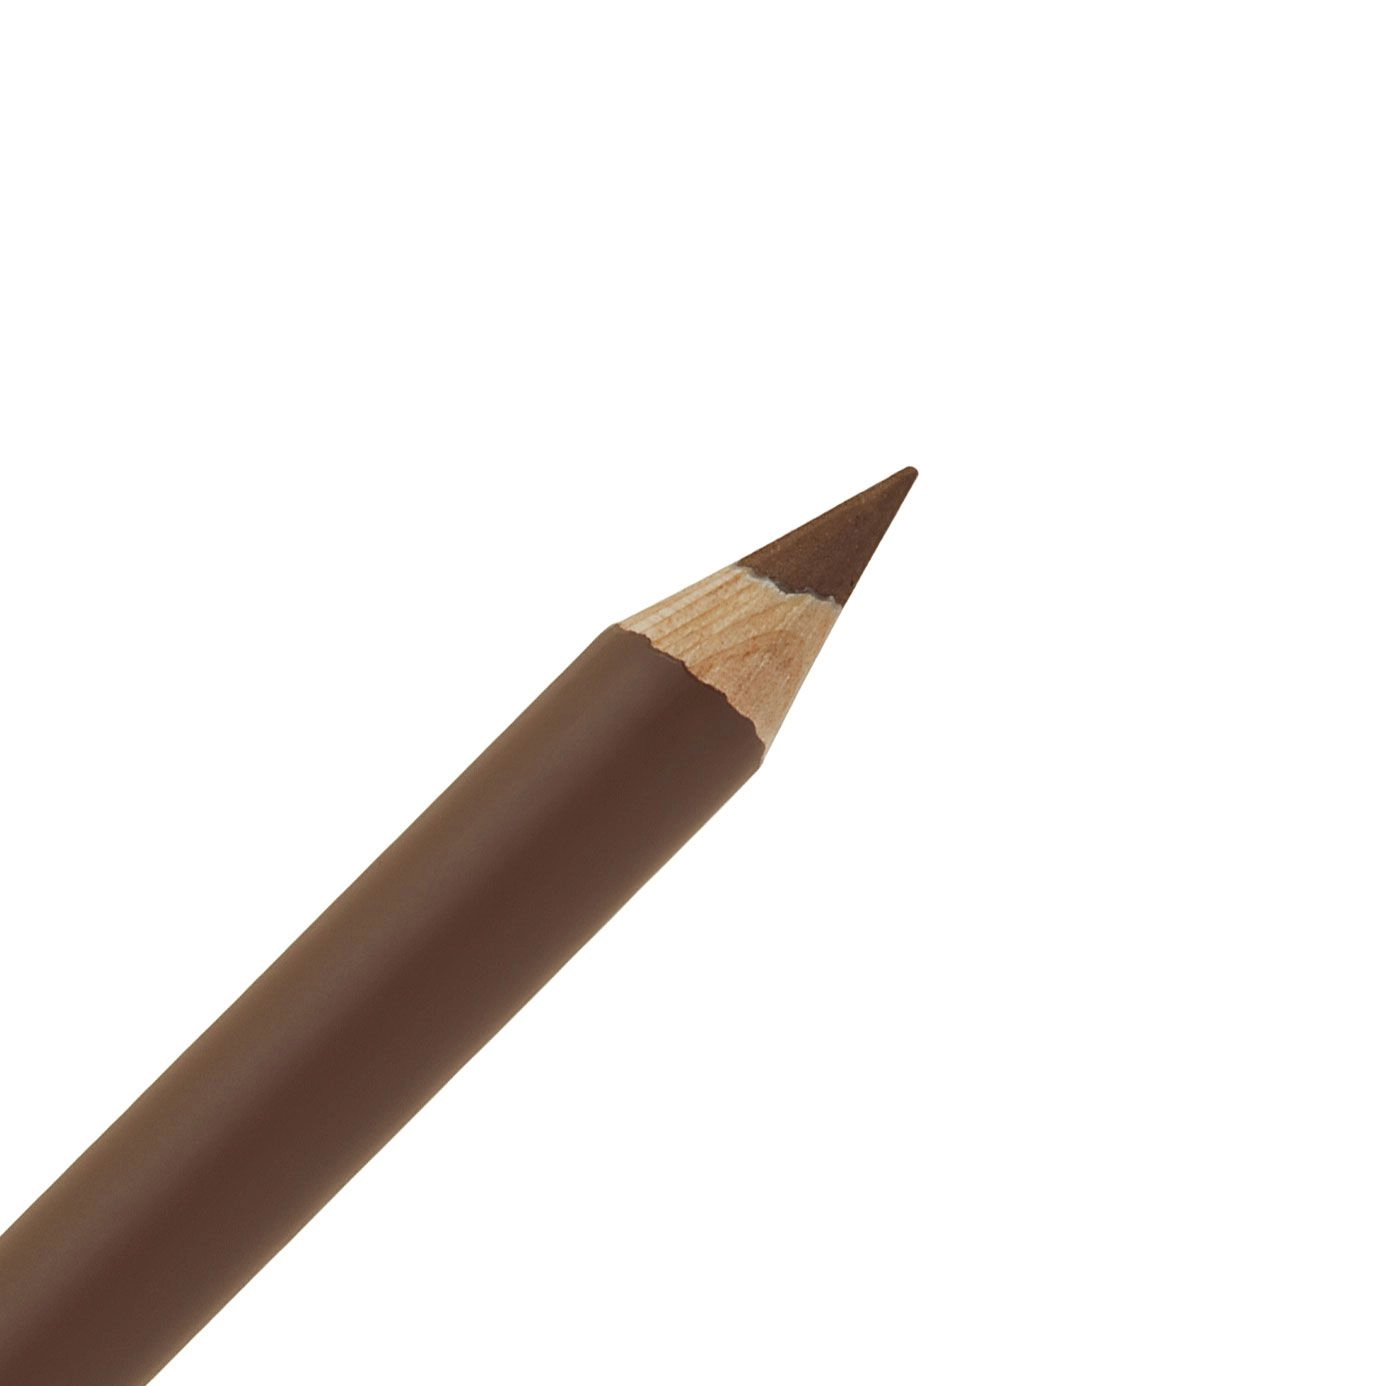 Lancome Карандаш для бровей Brow Shaping Powdery Pencil 05 Chestnut, 1.19 г - фото N2